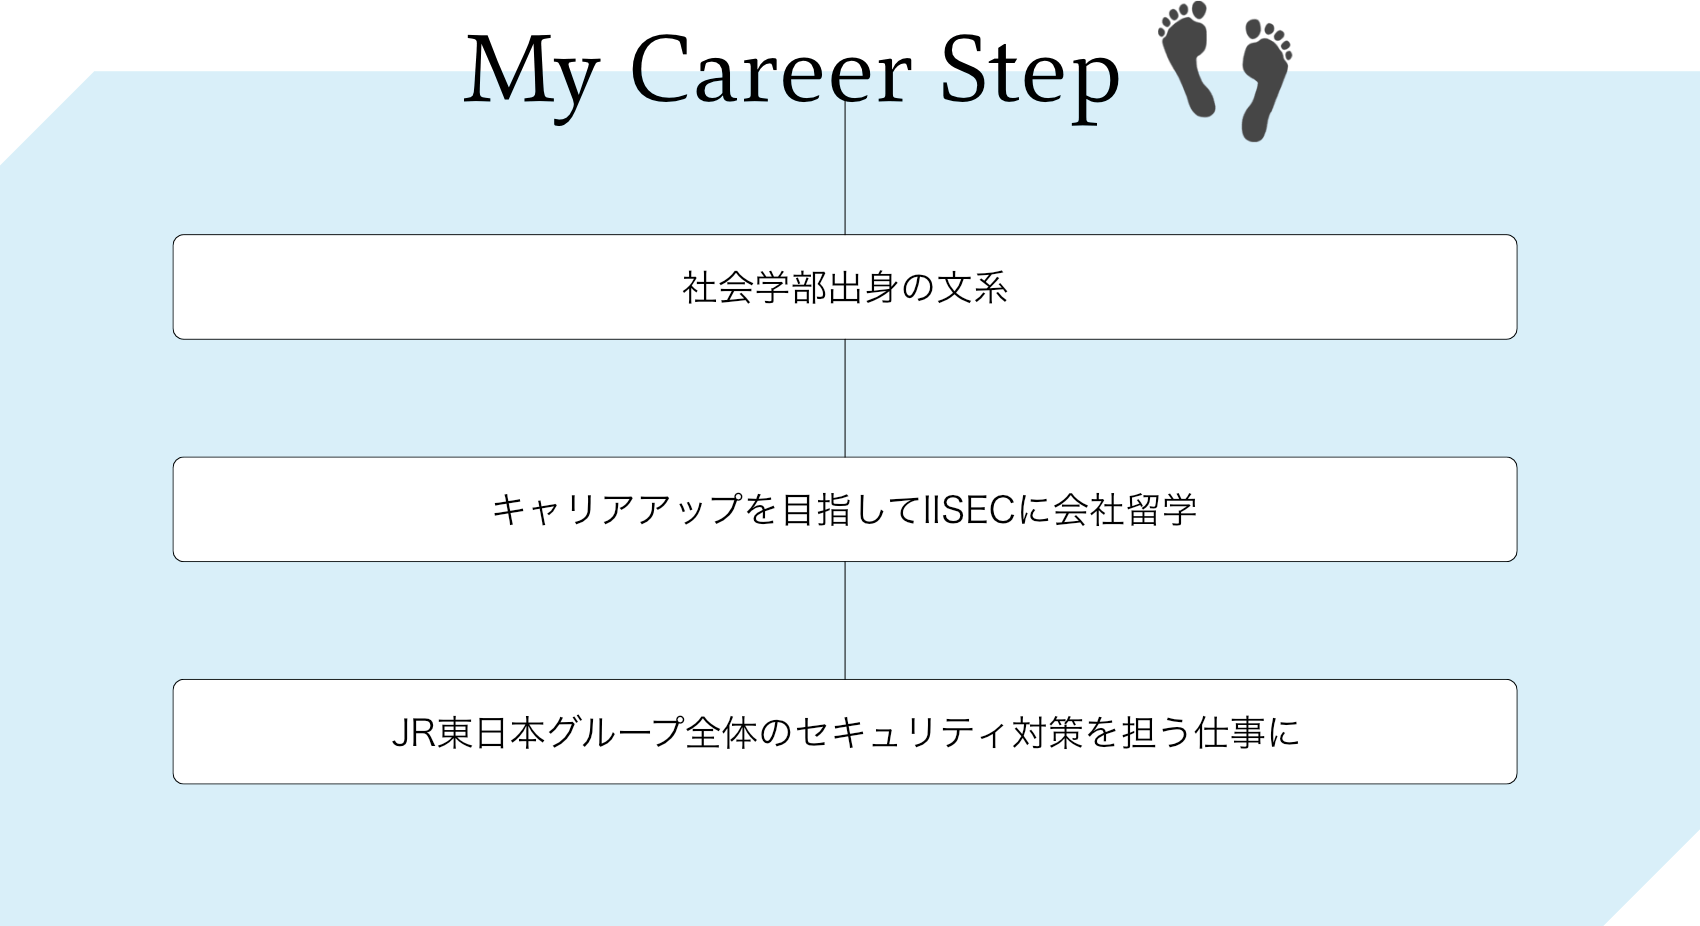 J - My Career Step